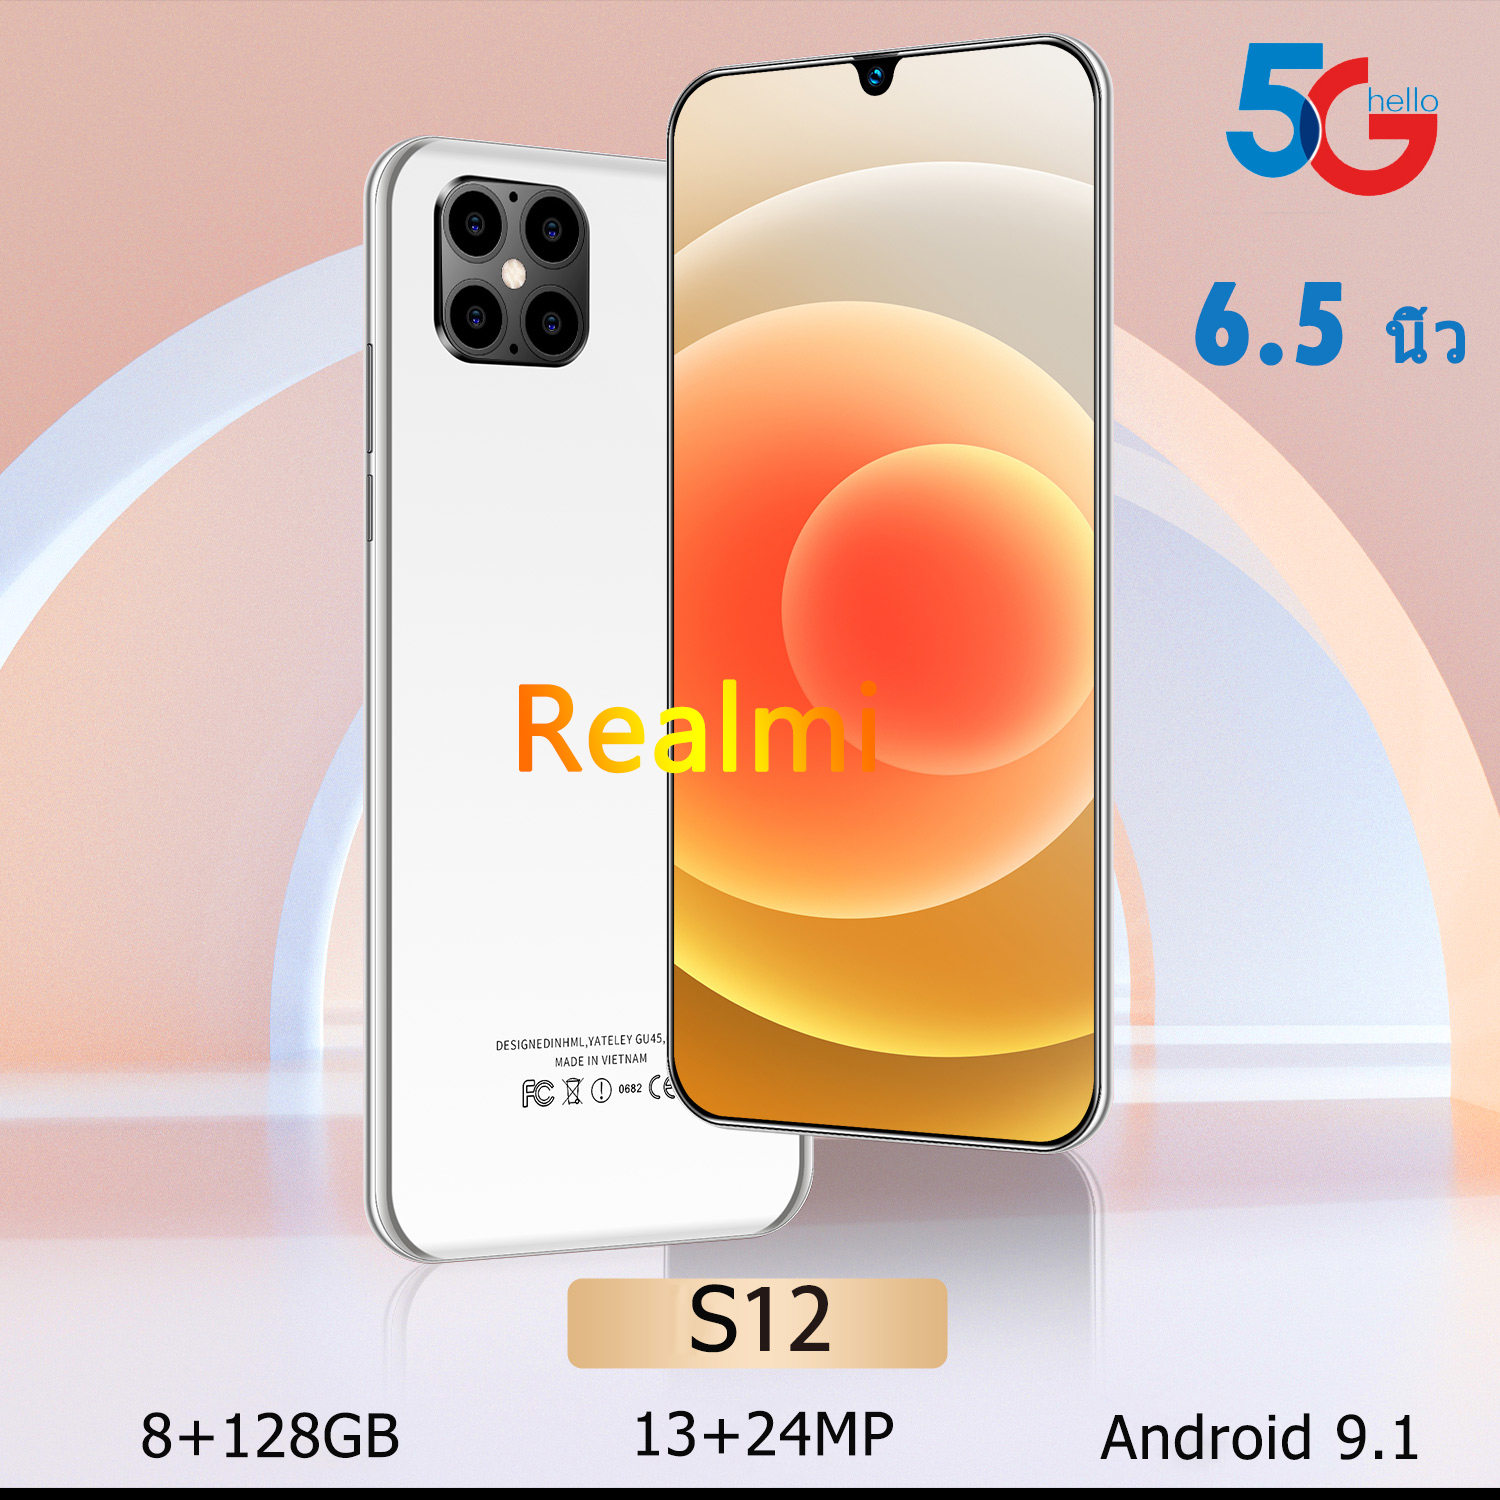 ศูนย์ไทย Realmi มือถือหน้าจอใหญ่ เครื่องศูนย์แท้ มือถือราคาถูก 5g smart phone 2021เครื่องใหม่ ประกันศูนย์ประเทศไทย 12 เดือน ระบบสแกนใบหน้า สมาร์ทโฟน มือถือราคาถูก ROM128gb smartphone มีการรับประกันจากผู้ขาย สมาร์ทโฟน ใช้แอพธนาคารได้